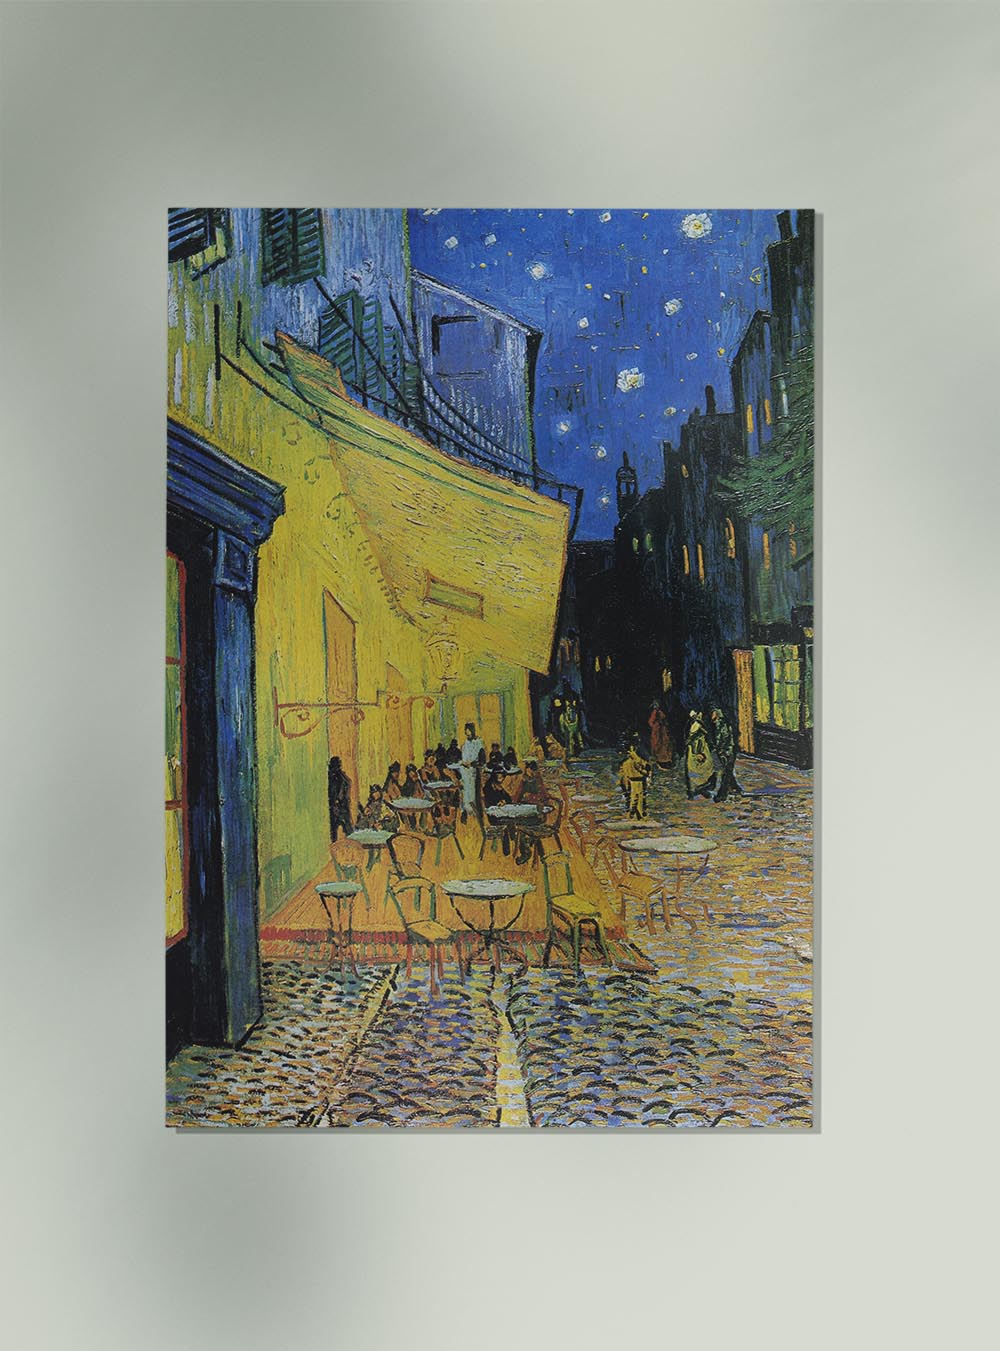 Café Terrace at Night Art Print by Van Gogh